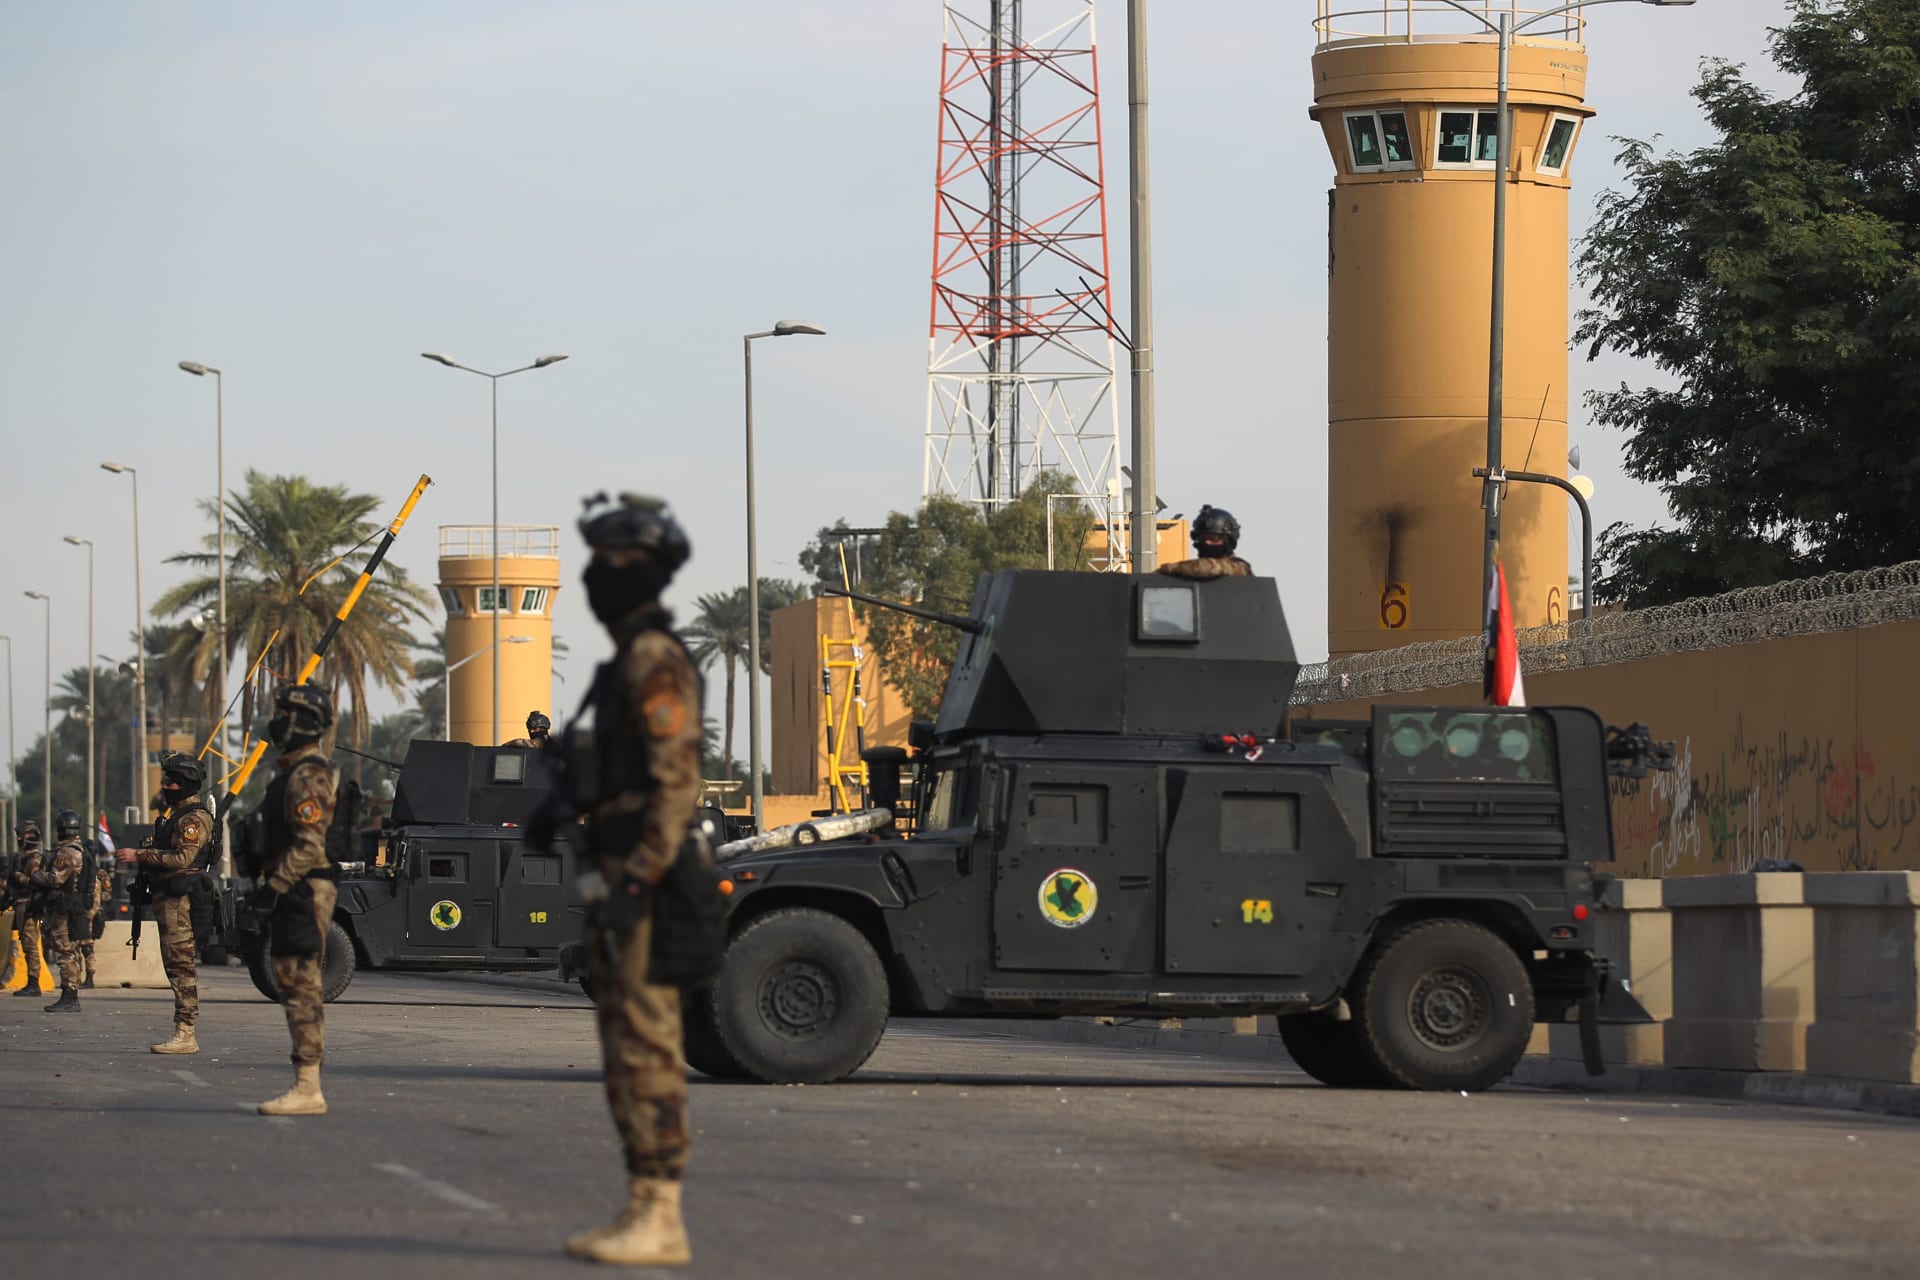 قوات مكافحة الإرهاب العراقية تقف لحراسة السفارة الأمريكية في العاصمة بغداد في 2 يناير 2020